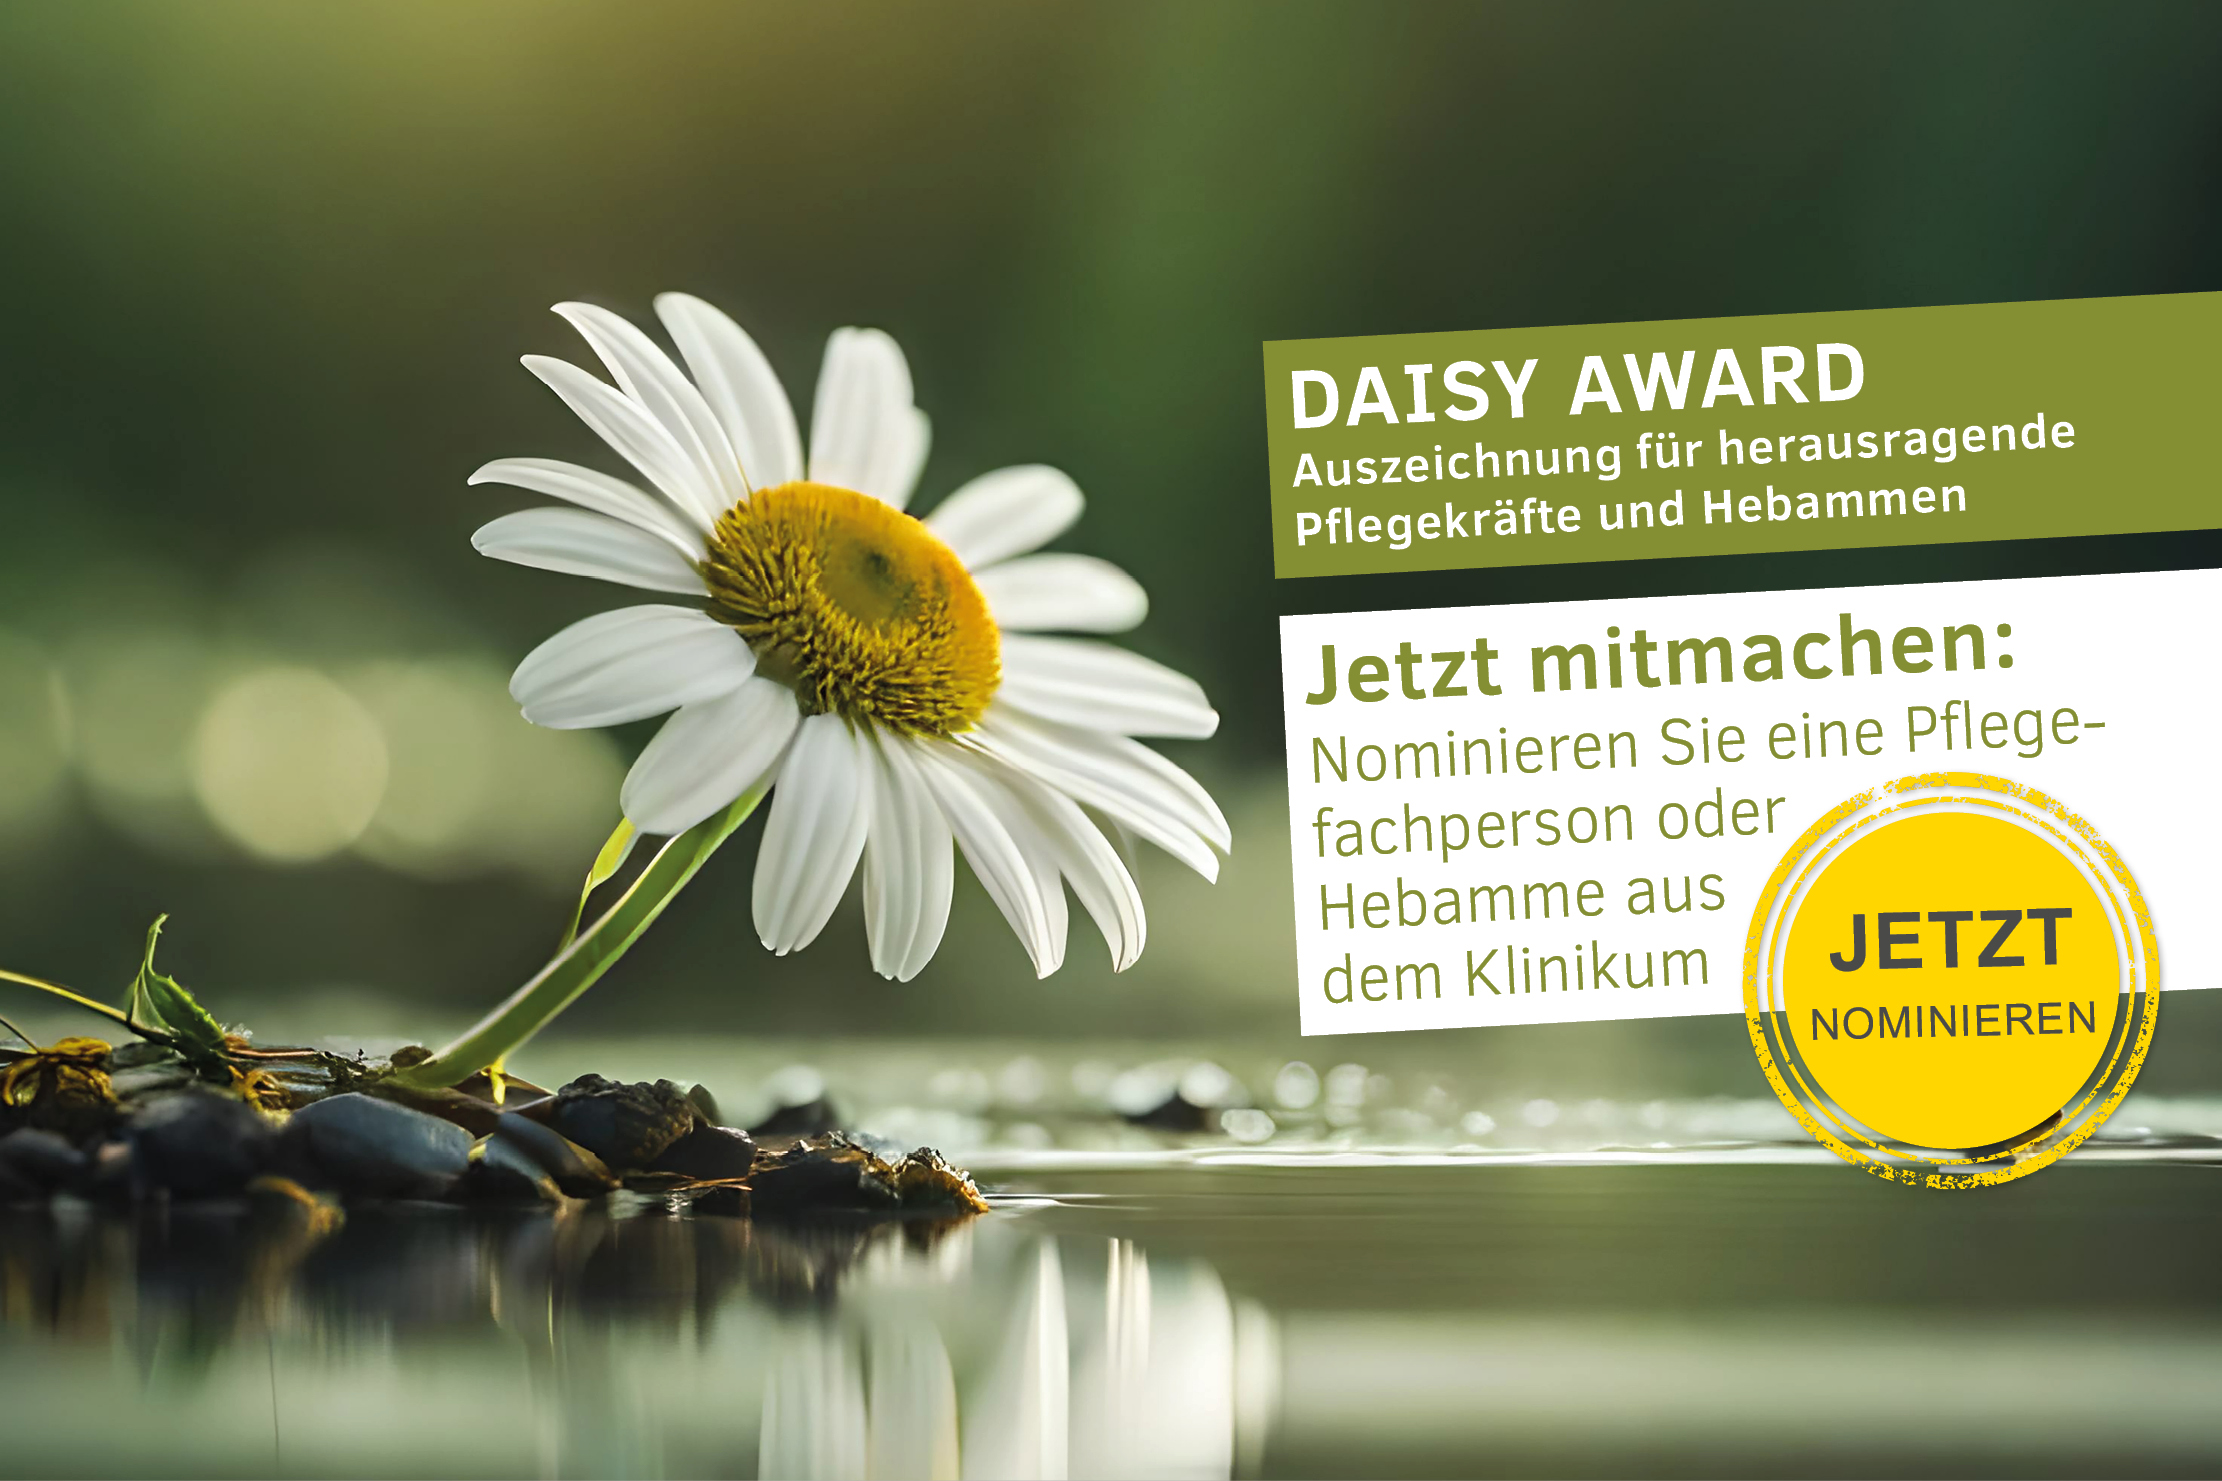 Bild eines Gänseblümchens mit Text "DAISY Award. Auszeichnung für herausragende Pflegekräfte und Hebammen. jetzt mitmachen: Nominieren Sie eine Pflegeperson oder Hebamme aus dem Klinikum. JETZT nominieren"